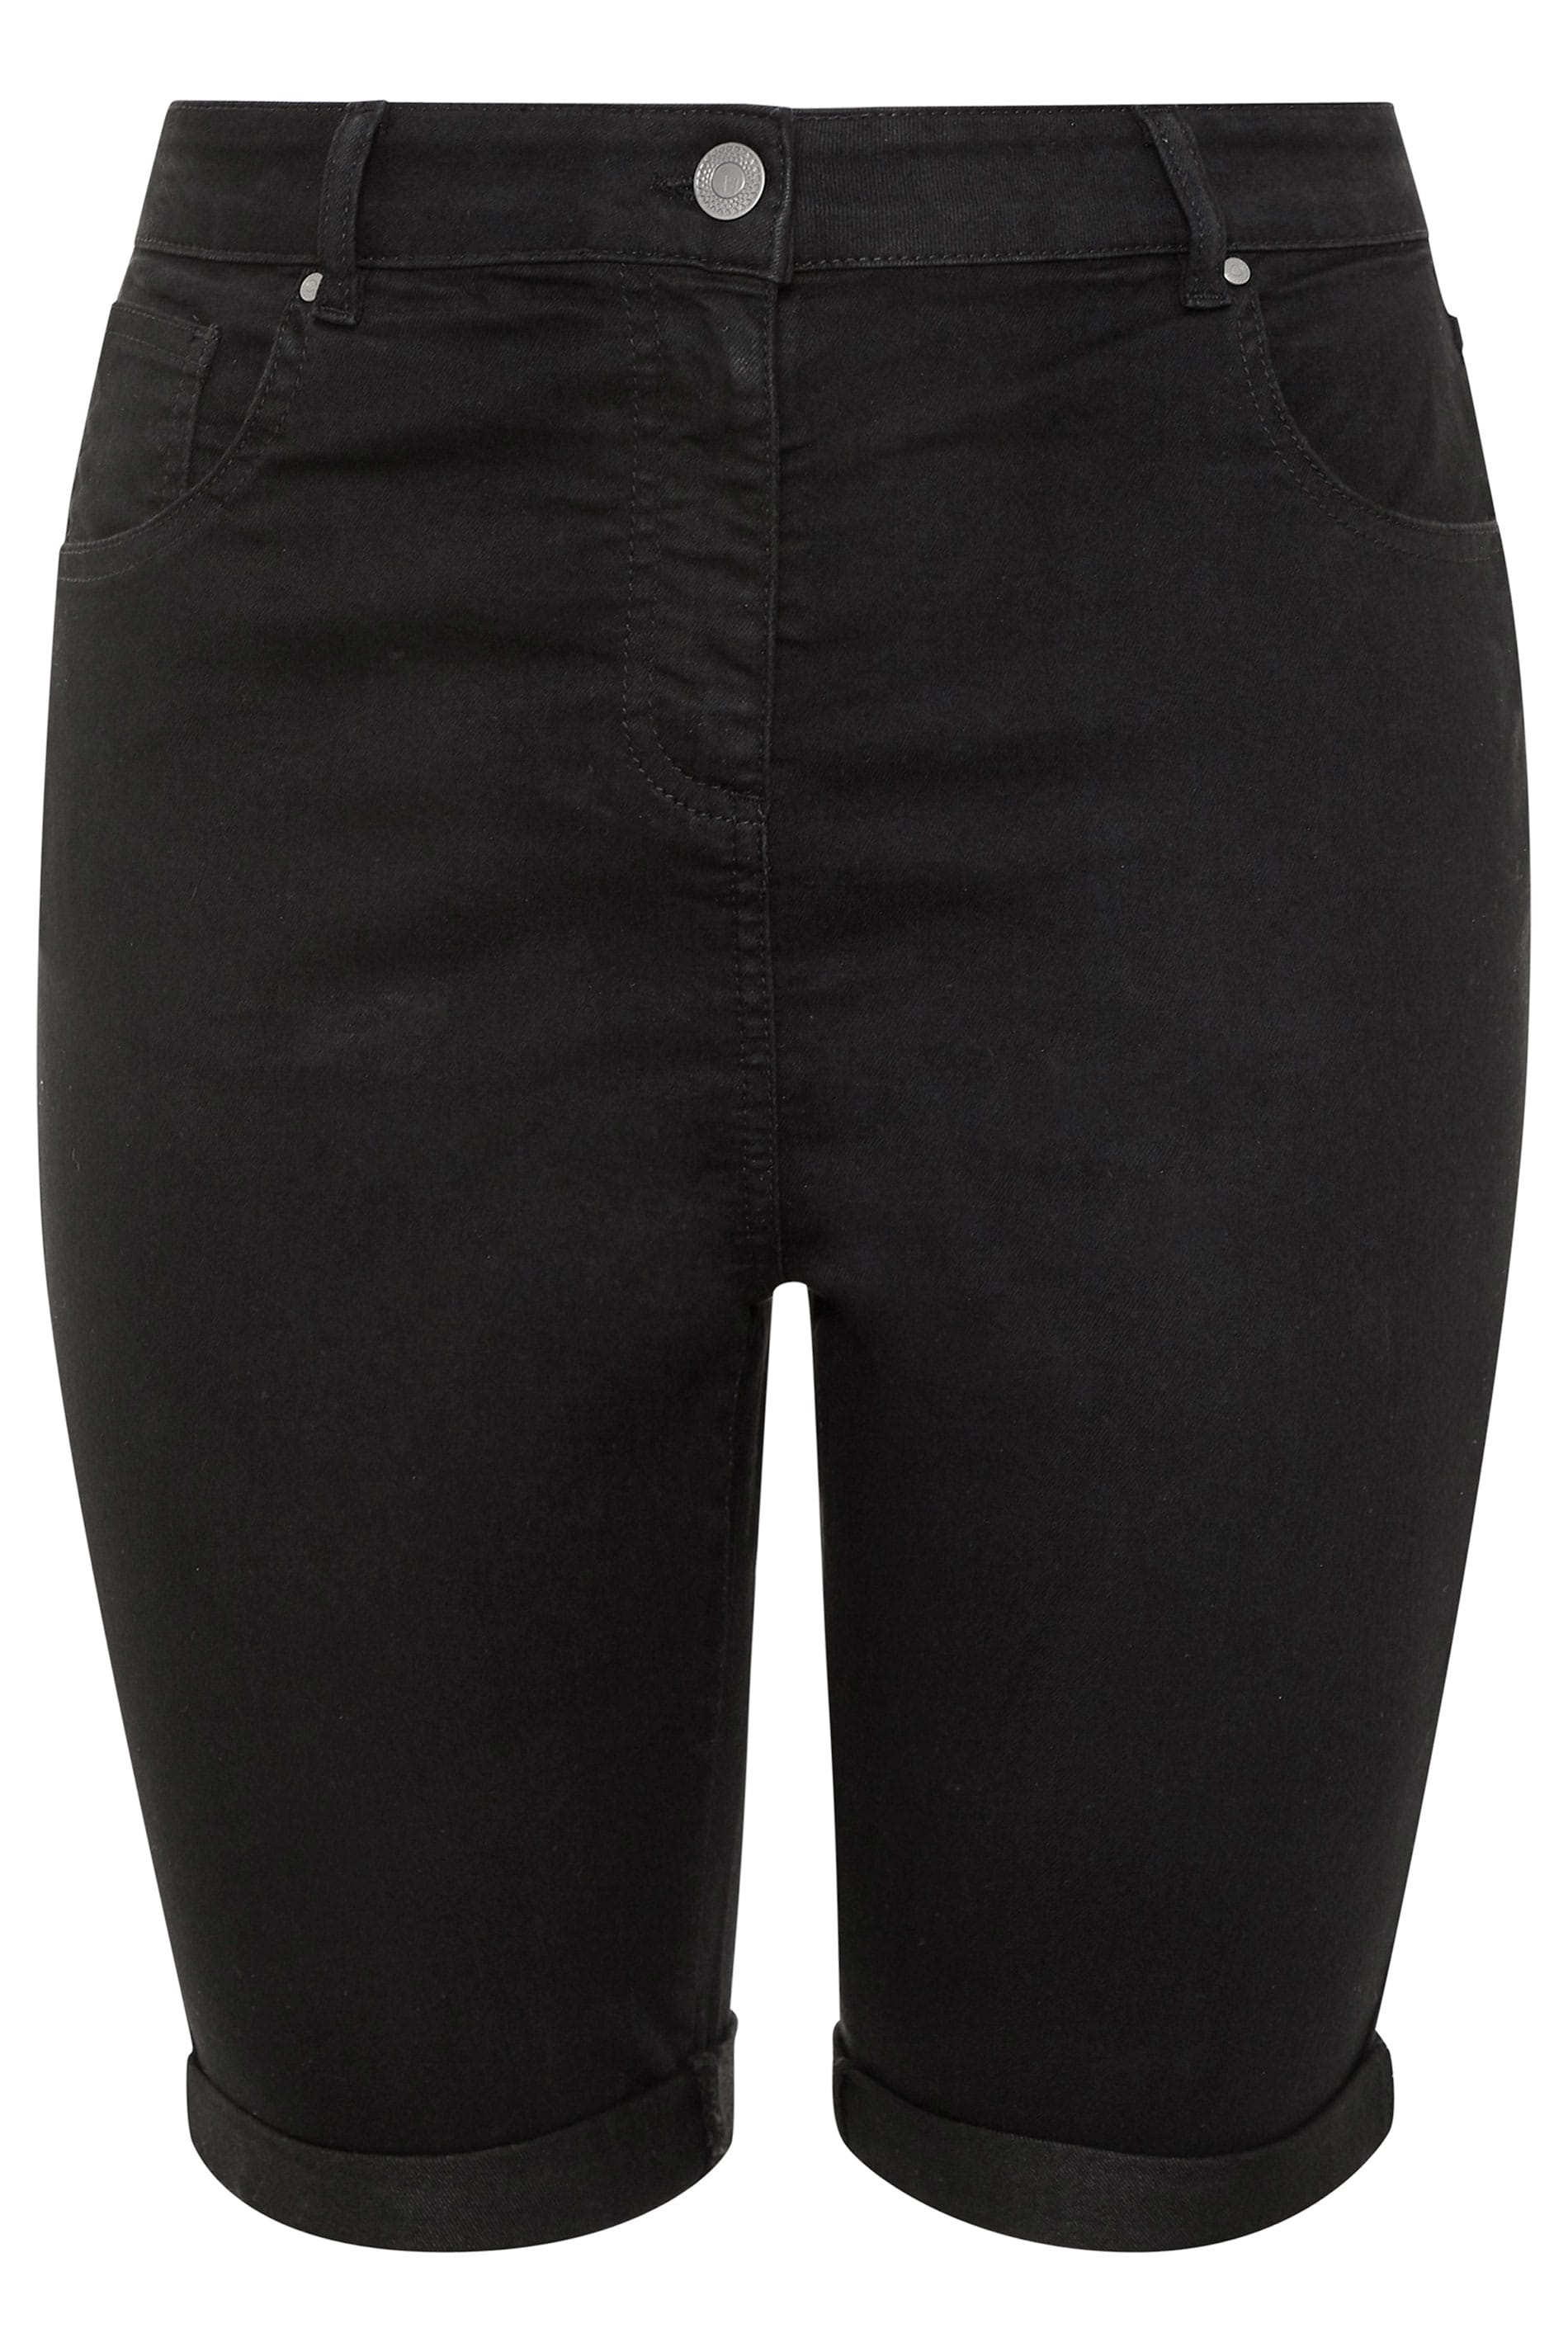 Black Basic Denim Shorts | Yours Clothing